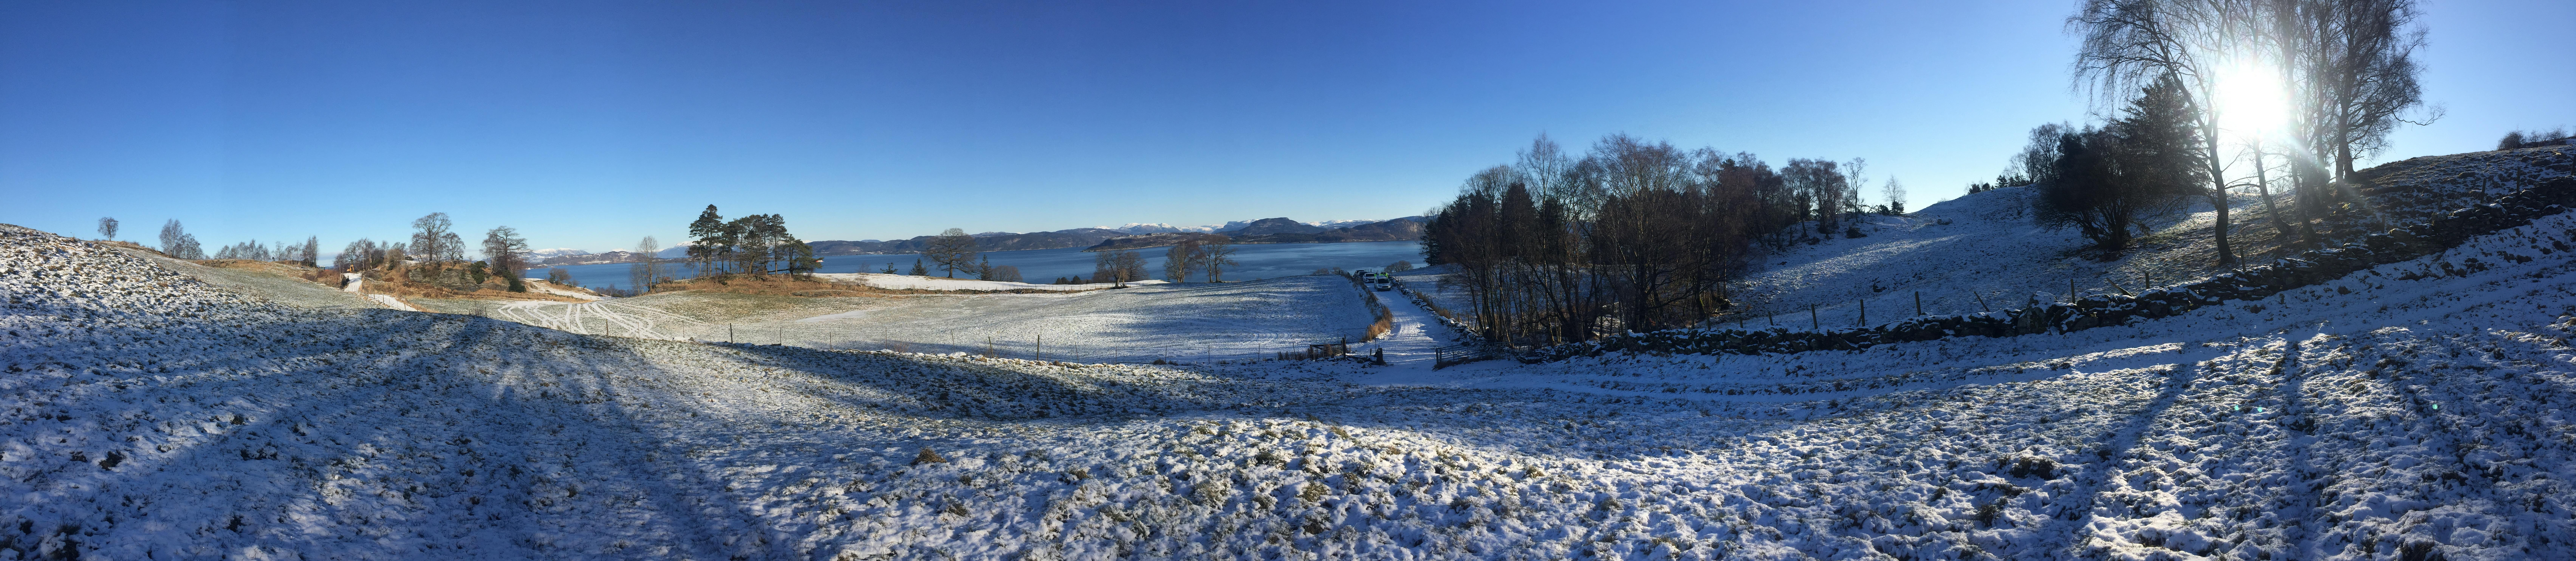 Finnøy i vinterdrakt. Bildet er tatt ved Lauvsnesåsen i retning mot Halsnøy